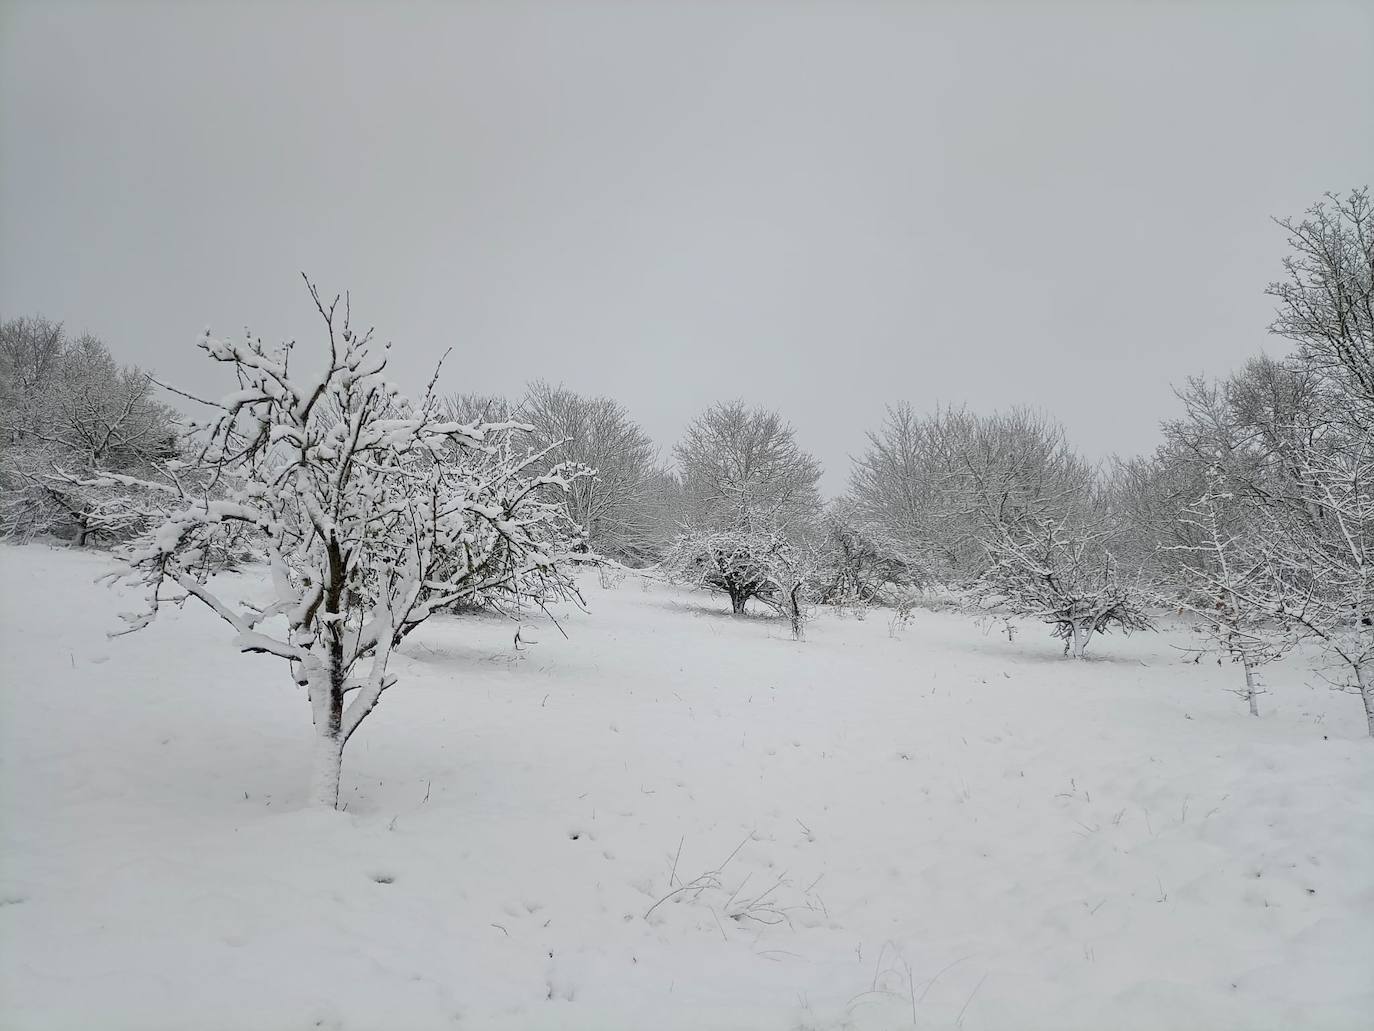 Bebé En Mono De Nieve Caliente Que Camina En El Parque Del Invierno Con Una  Nieve Blanca Foto de archivo - Imagen de fila, grupo: 82836110